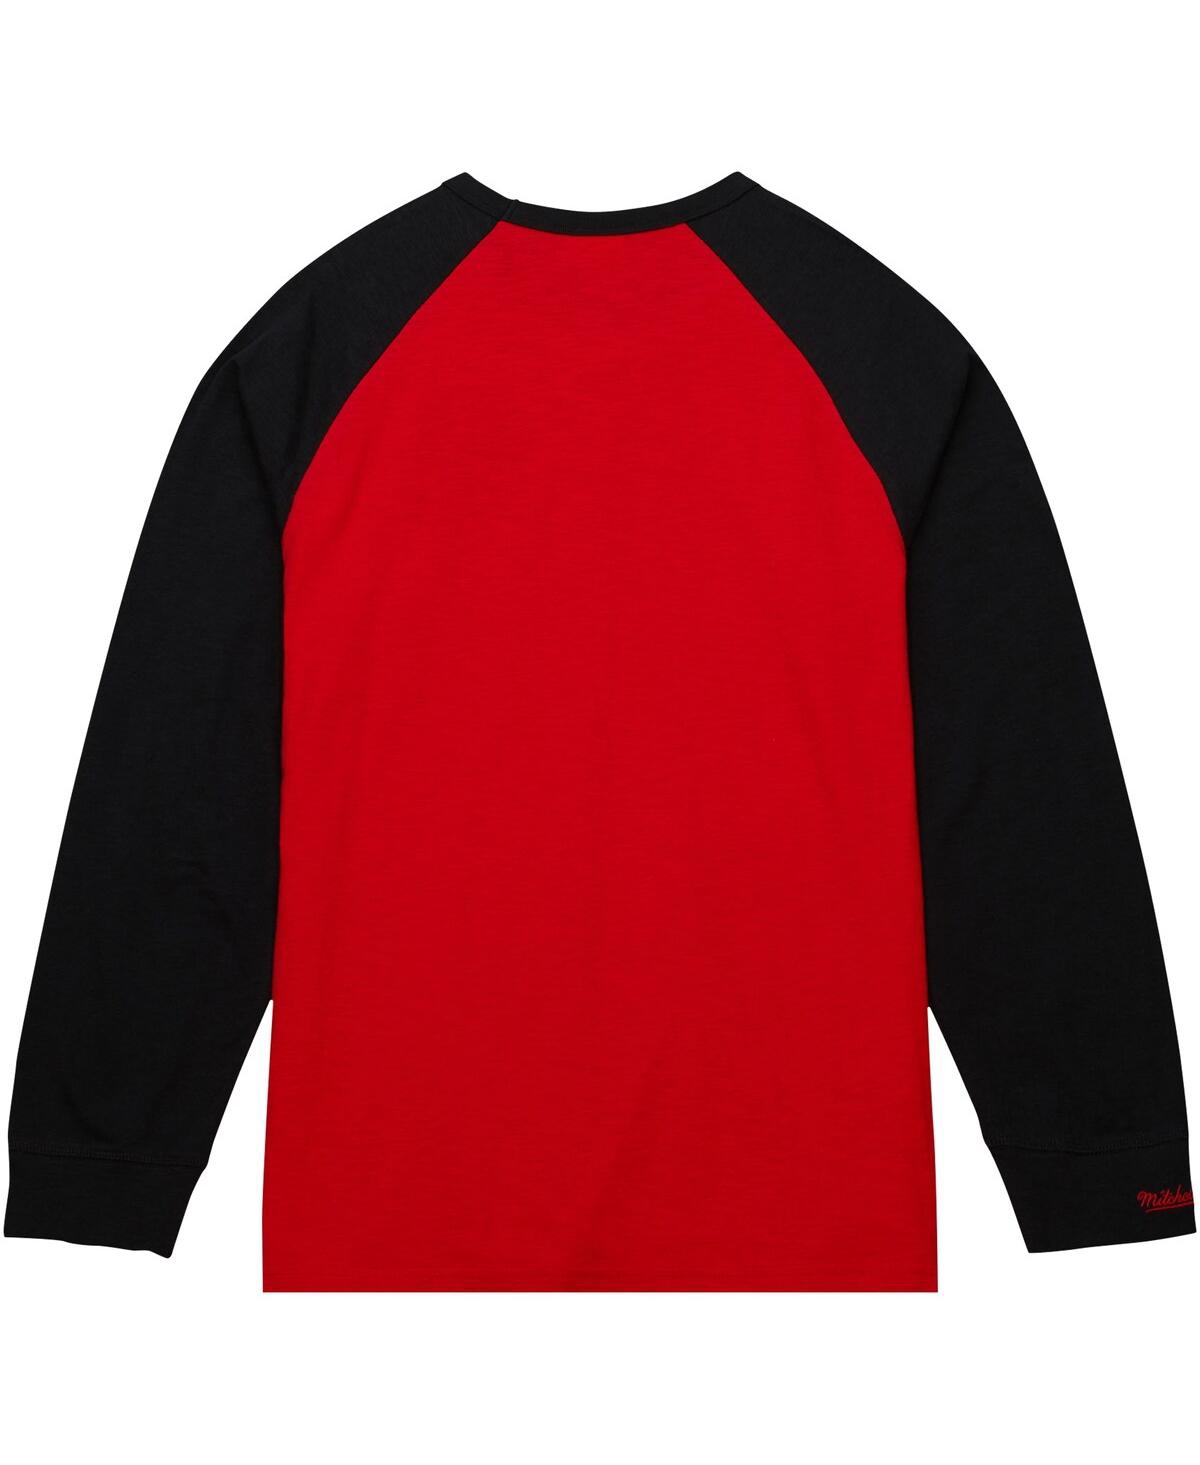 Shop Mitchell & Ness Men's  Red Louisville Cardinals Legendary Slub Raglan Long Sleeve T-shirt